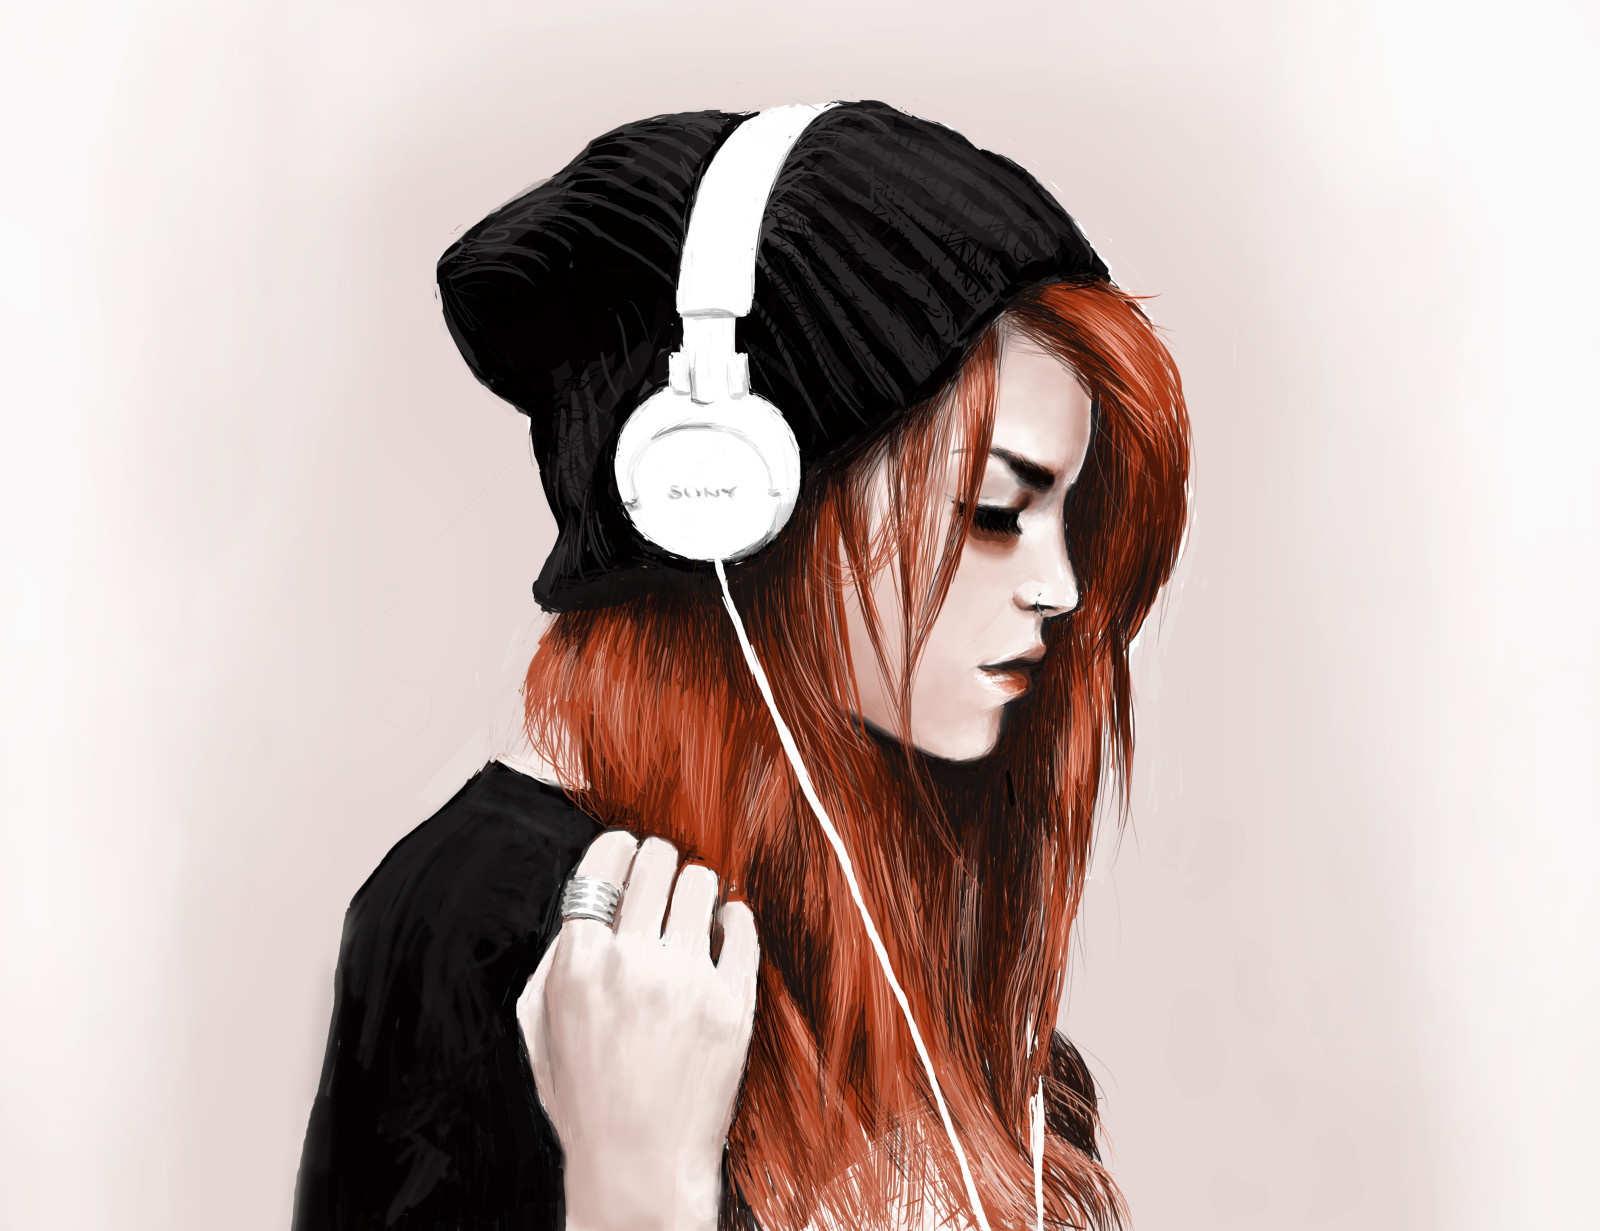 gadis, merah, topi, Headphone, cincin, tajam